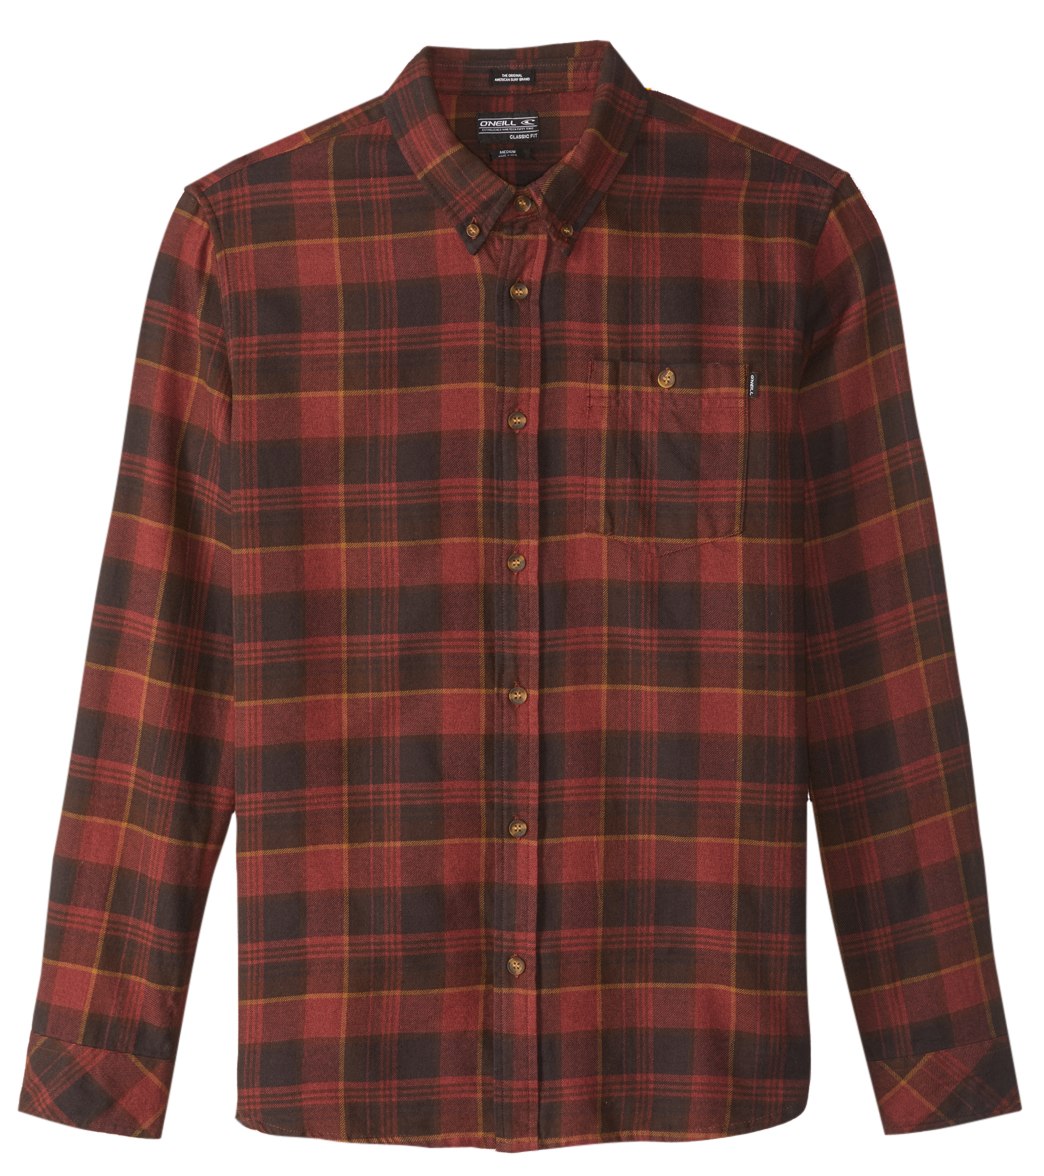 O'neill Men's Redmond Flannel Long Sleeve Shirt - Russet Brown Small Cotton - Swimoutlet.com